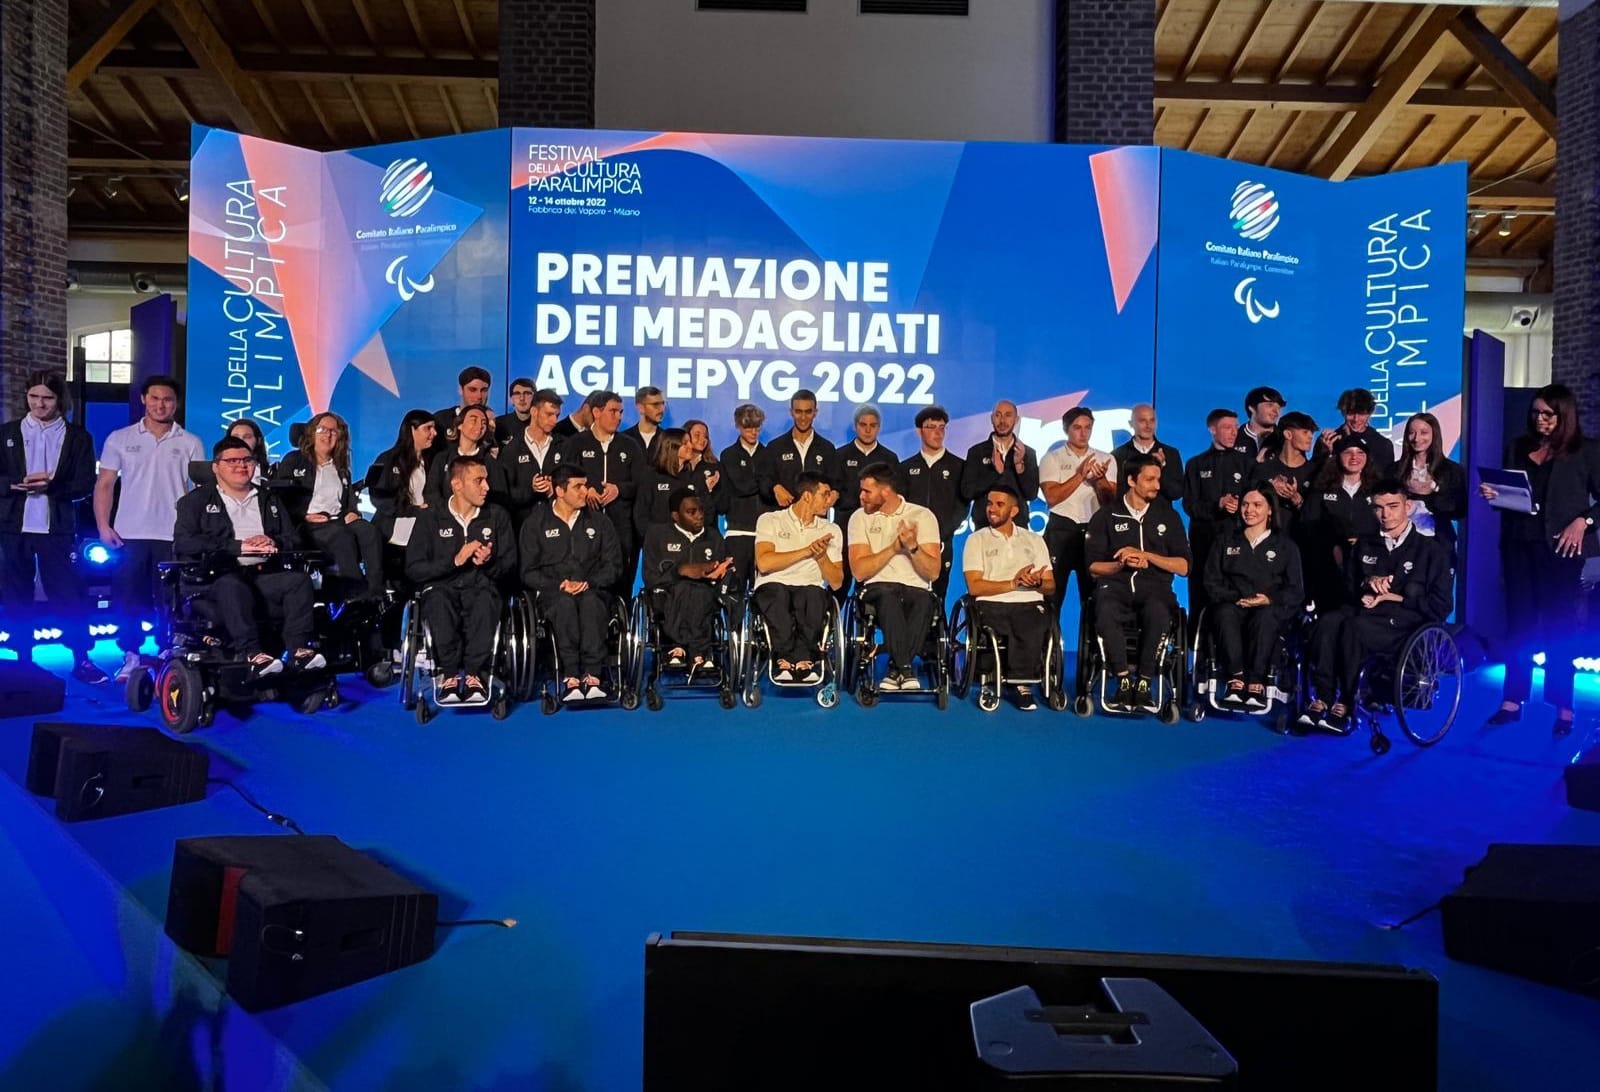 Festival della Cultura Paralimpica 2022 premiati gli atleti medagliati agli EPYG